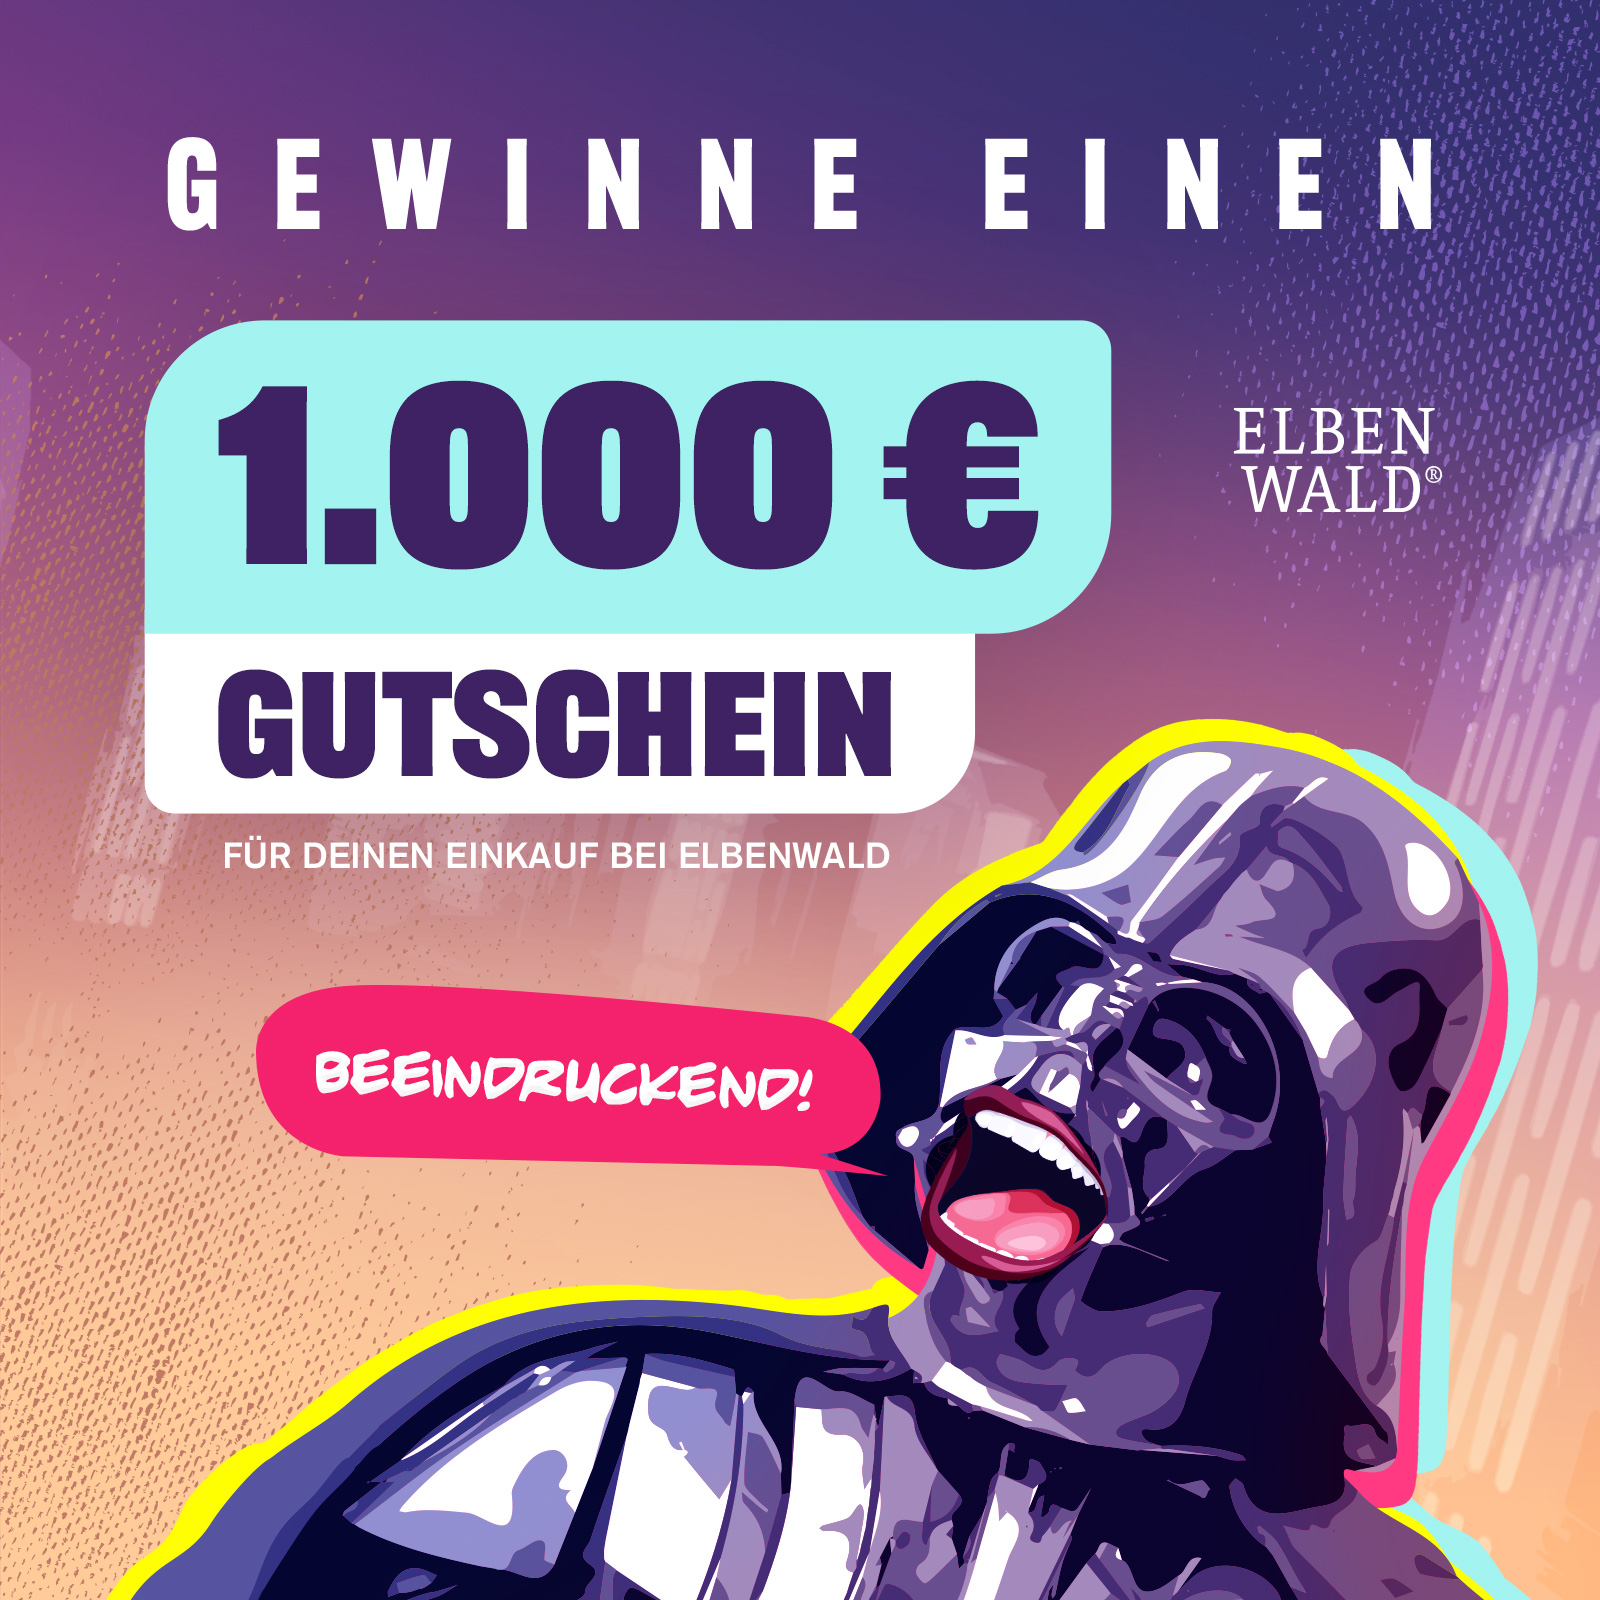 Gewinne einen 1000 EUR Gutschein für deinen Einkauf bei Elbenwald